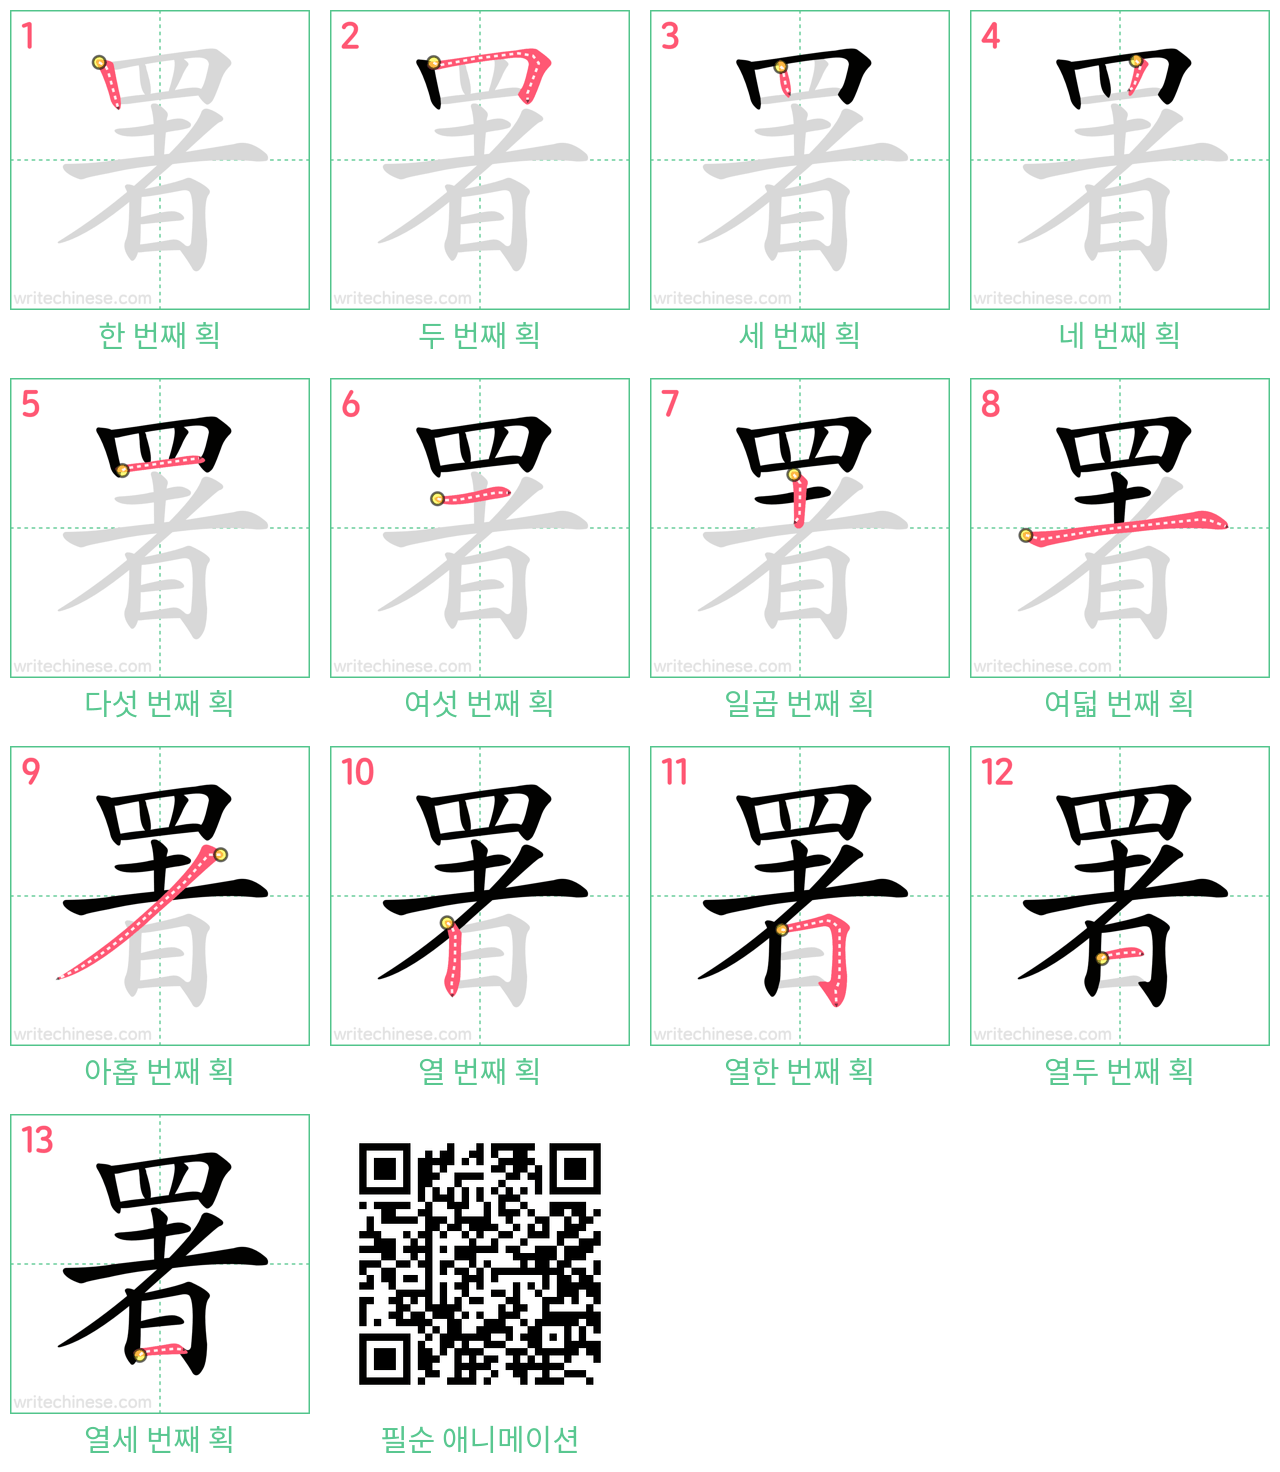 署 step-by-step stroke order diagrams